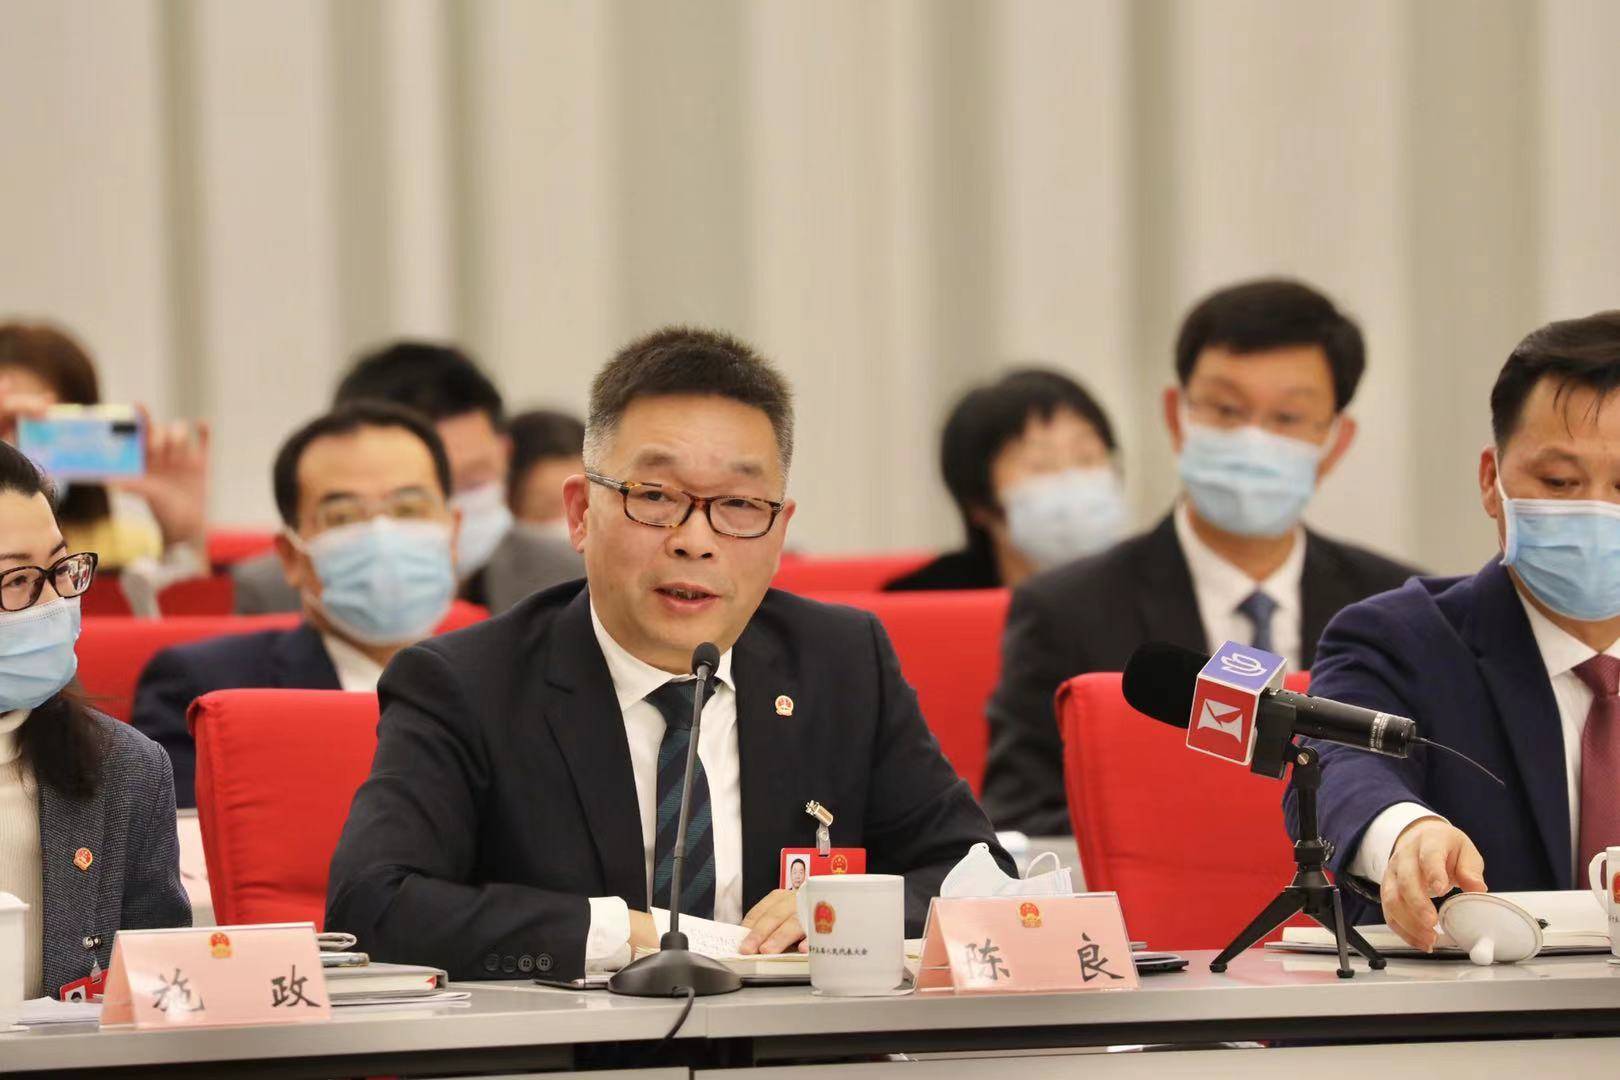 市人大代表陈良:为更好应对突发疫情,上海应建疫苗战略储备库